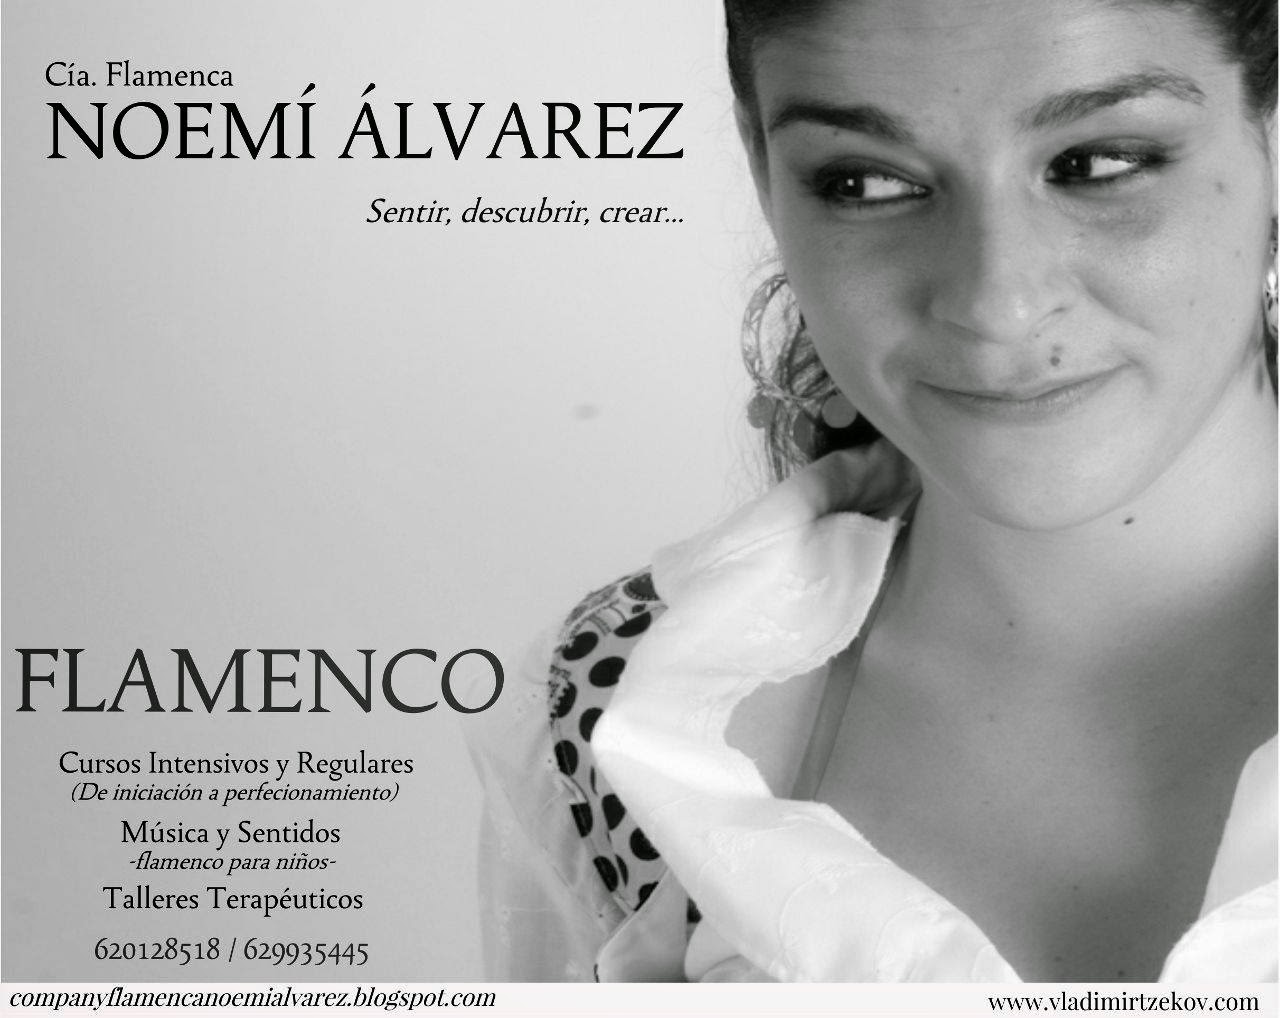 Cía. Flamenca Noemí Álvarez